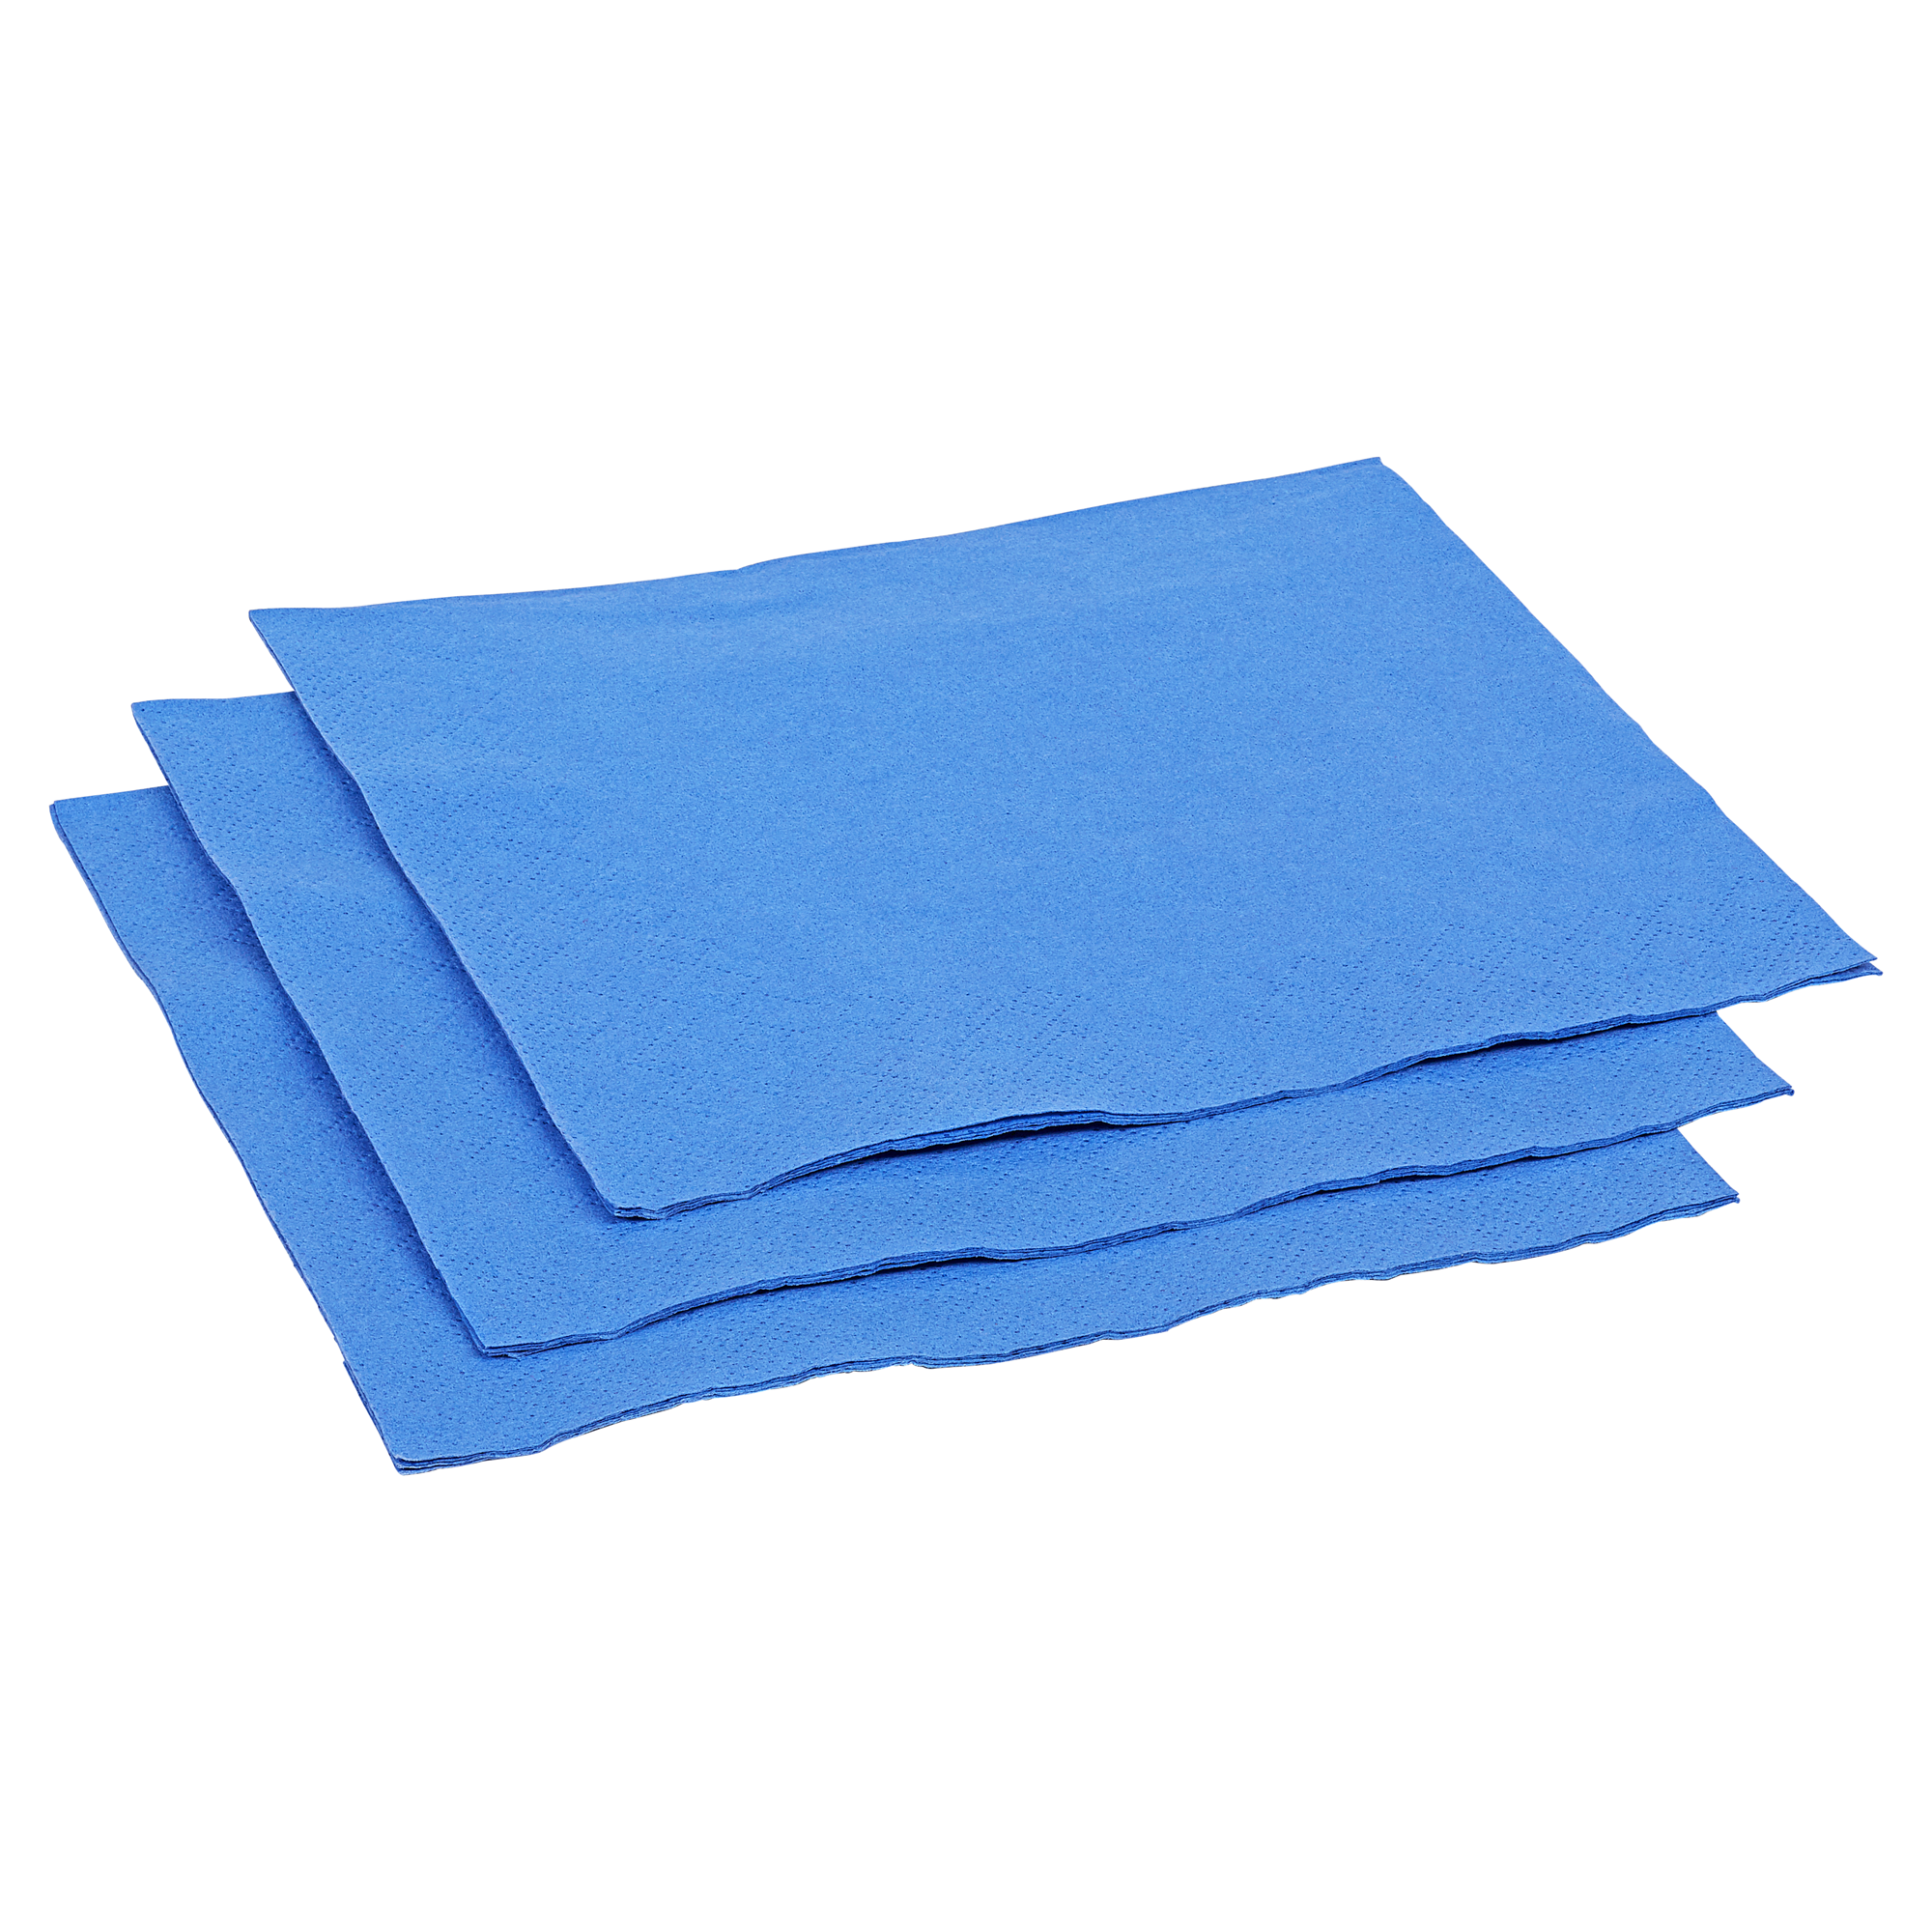 Zelltuch-Servietten 33 x 33 cm 30 Stück blau + product picture